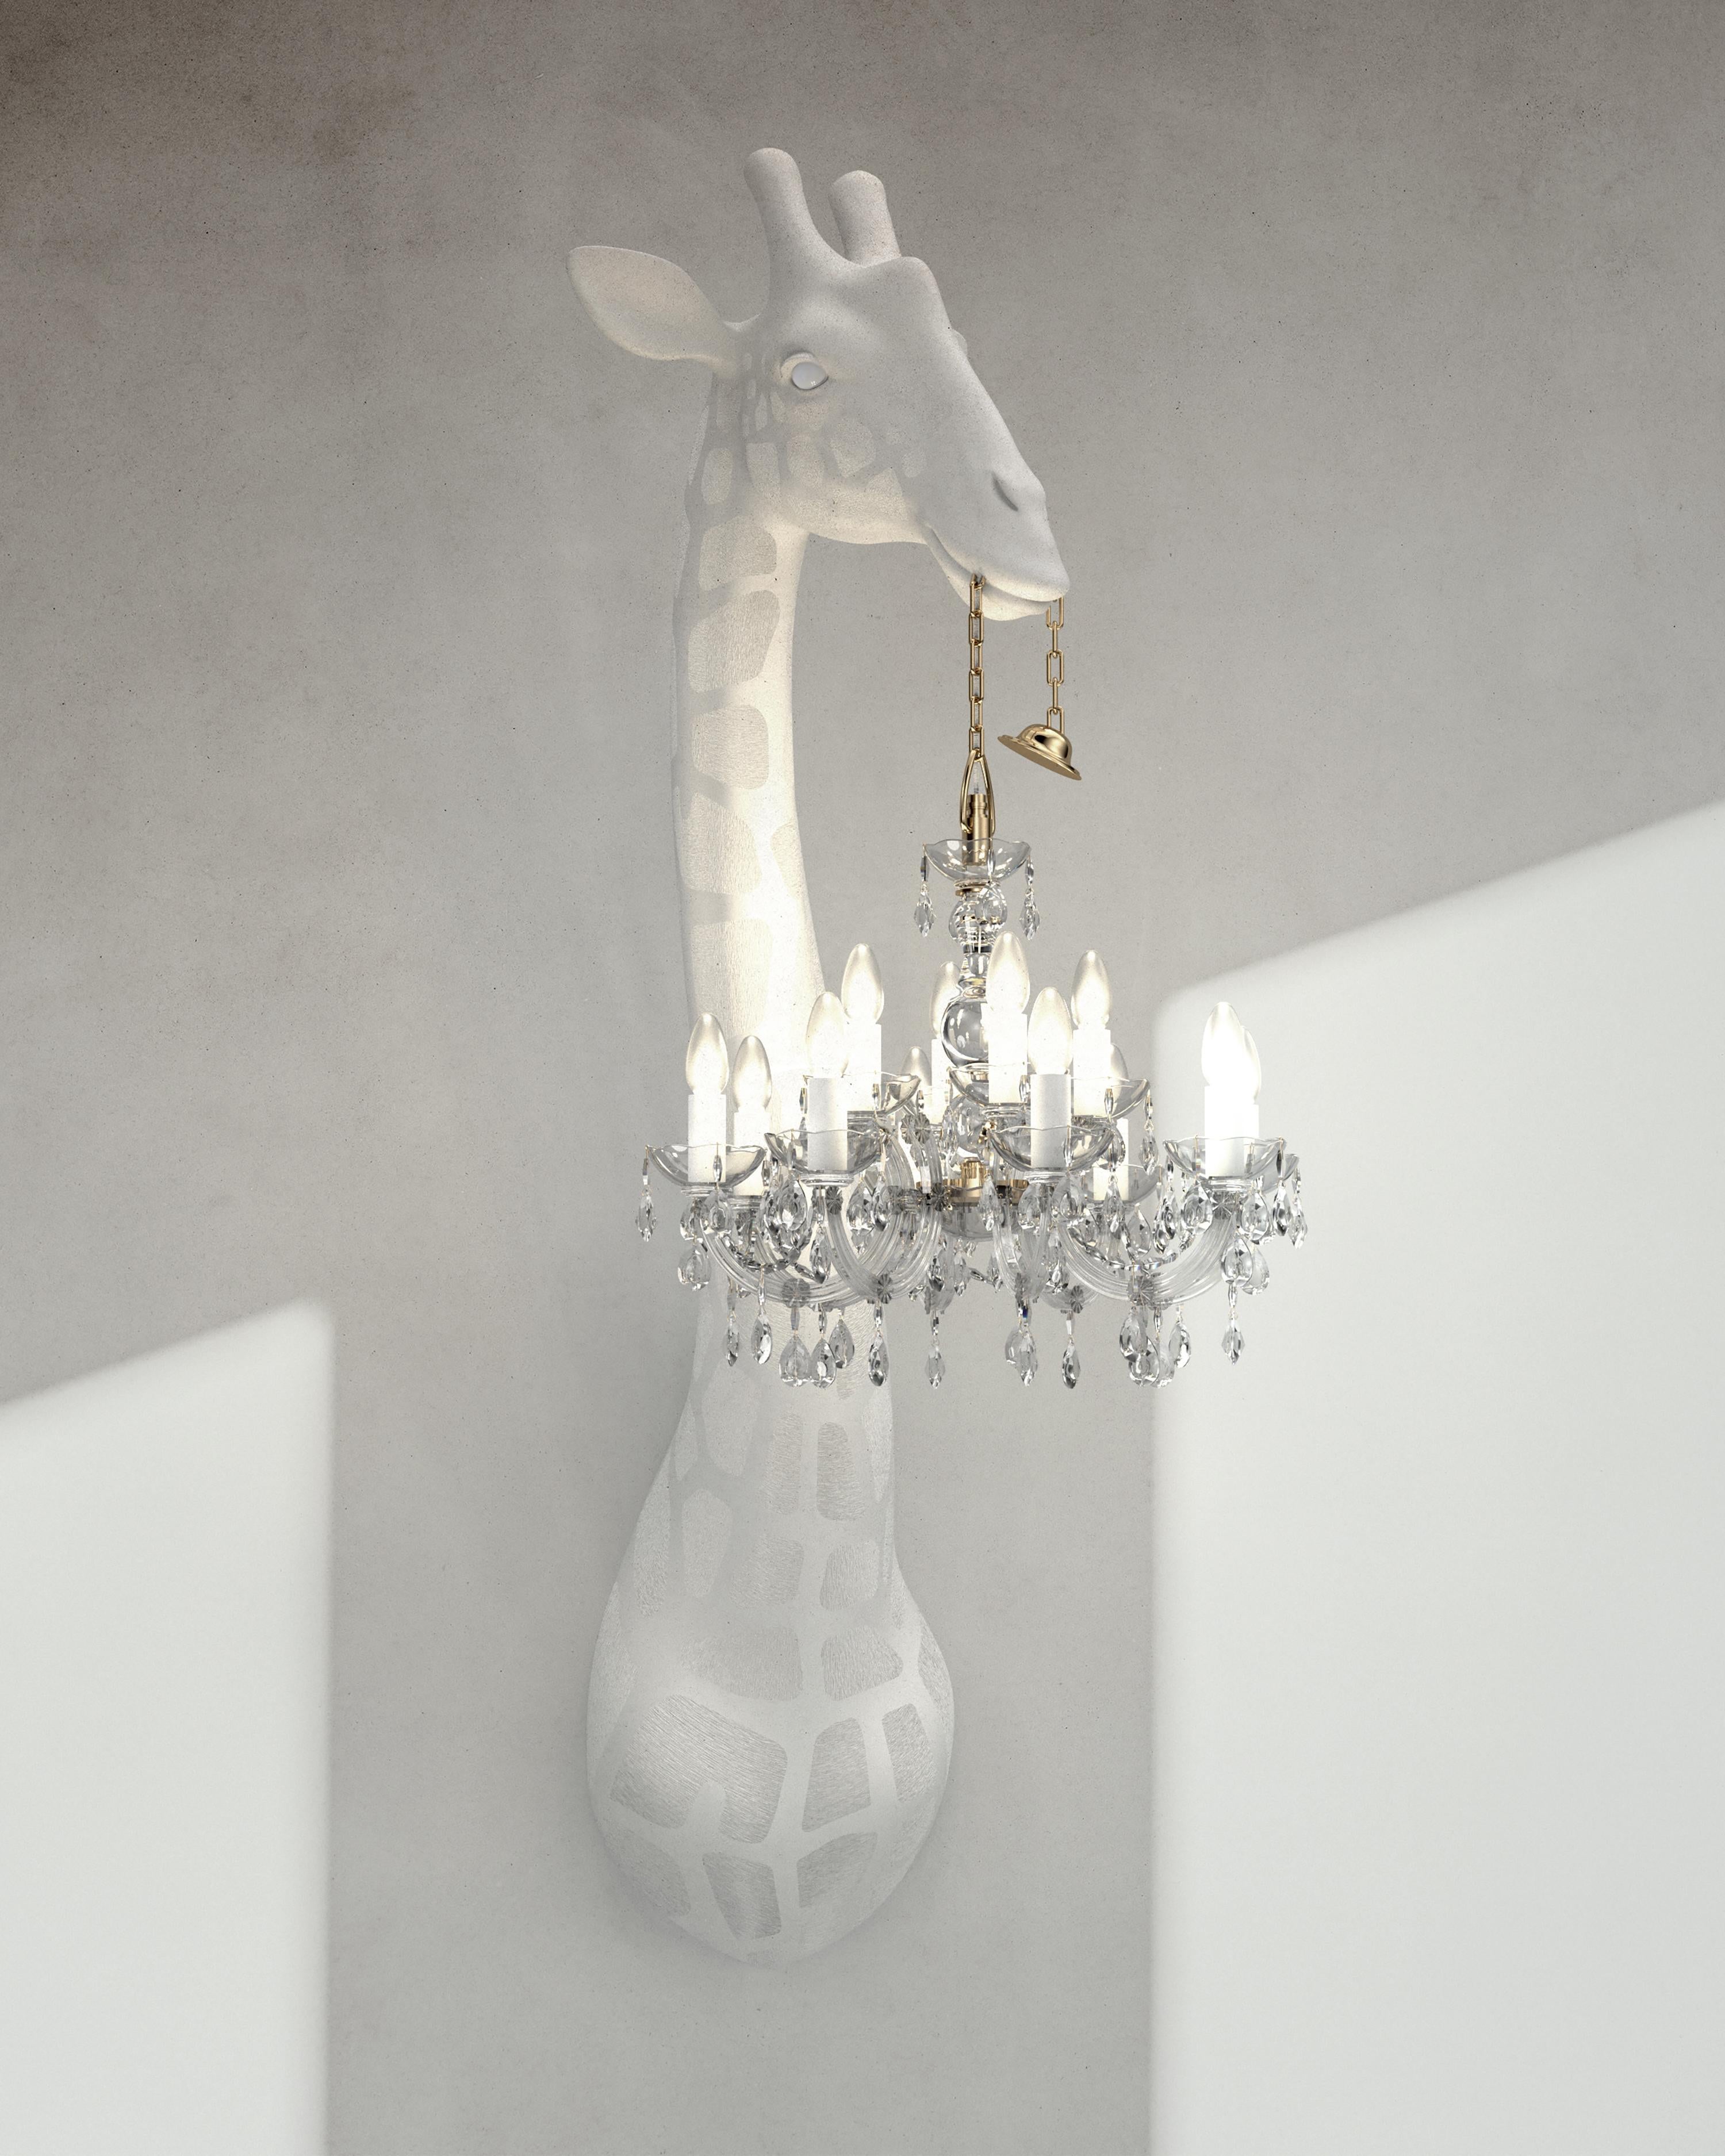 For Sale: White Modern 5.5 Foot White or Black Giraffe Wall Lamp Sconce Chandalier 2